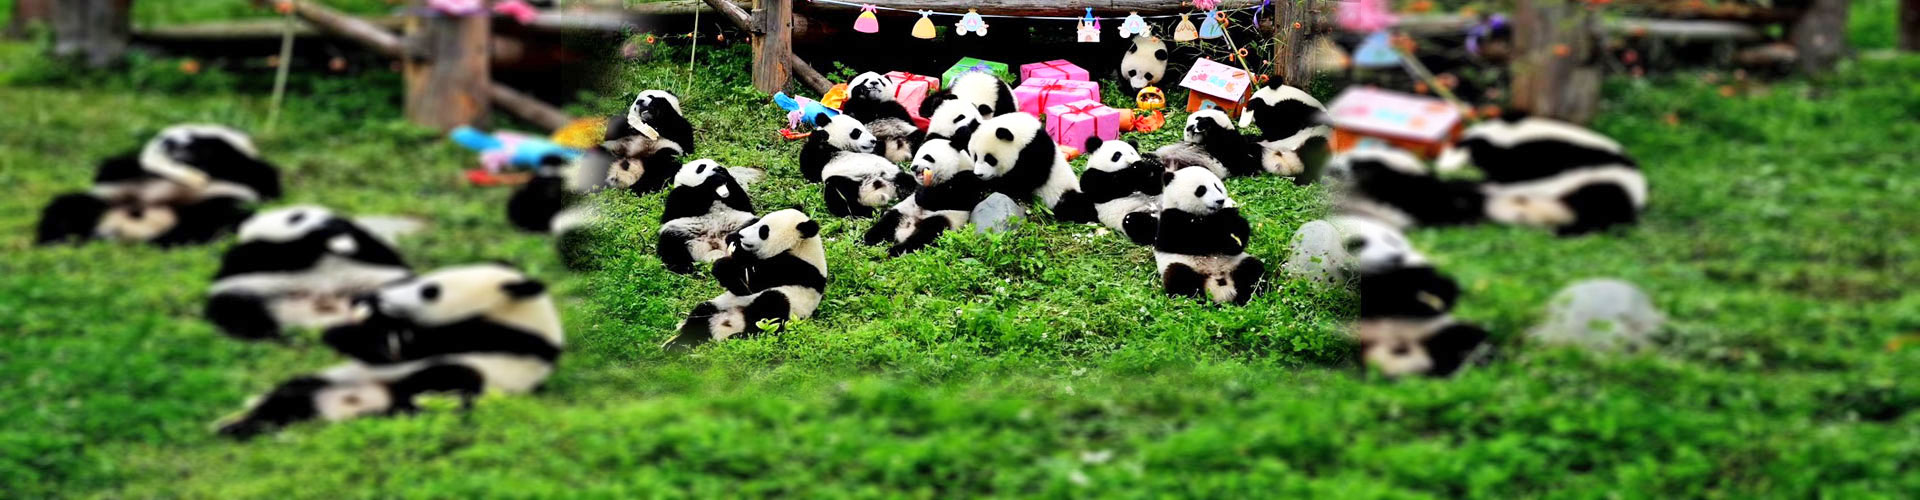 Centro de pandas gigantes 